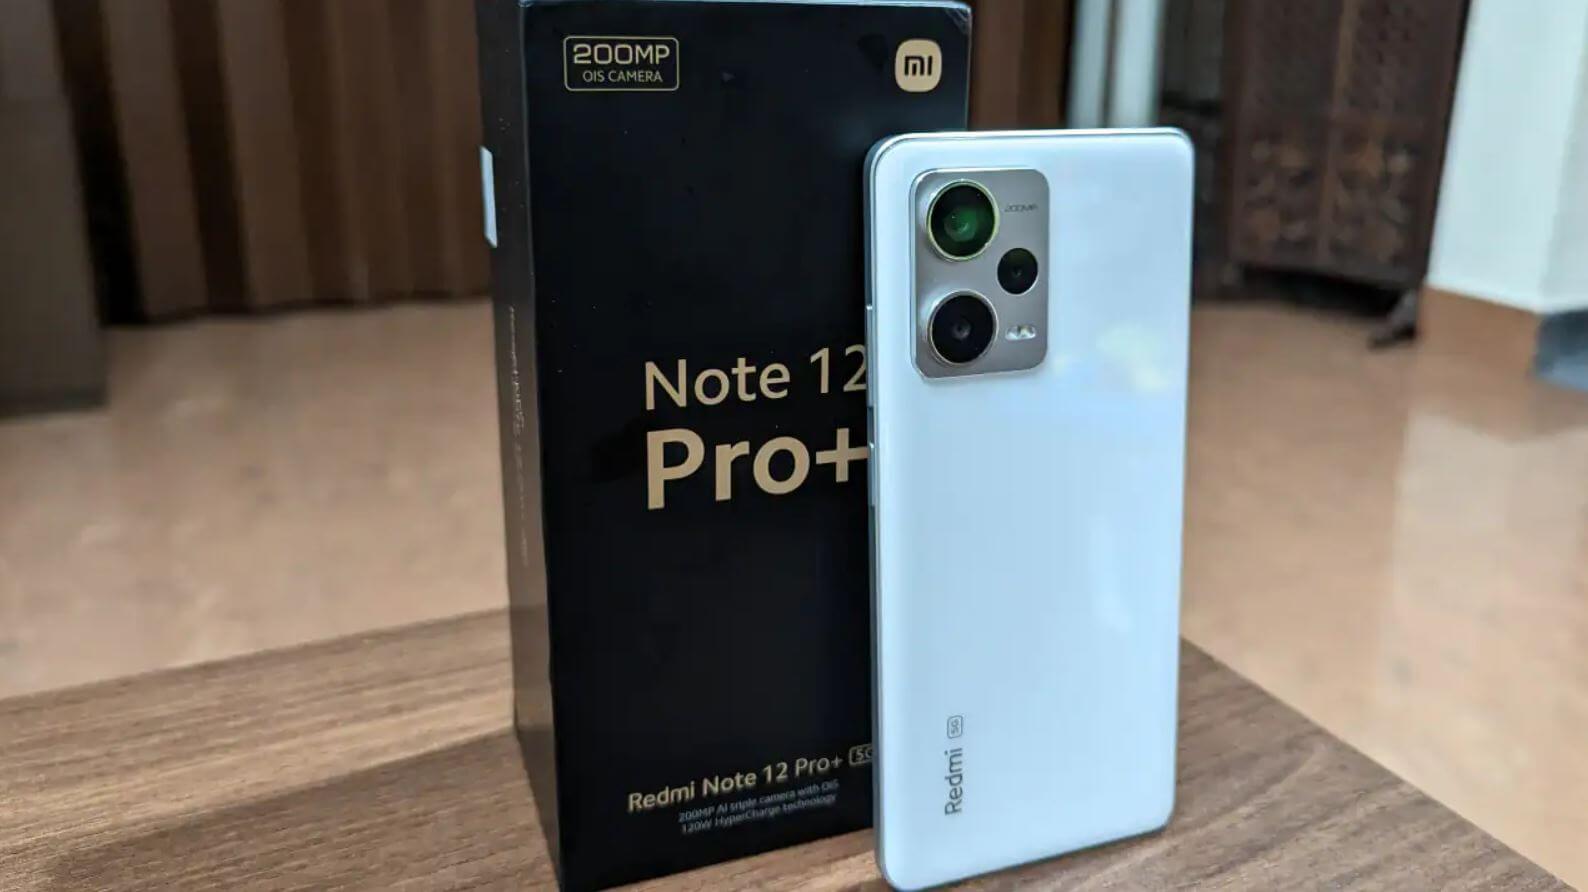 Купить Редми Ноут с хорошей камерой. Redmi Note 12 Pro Plus имеет свои преимущества над другими смартфонами линейки. Фото.